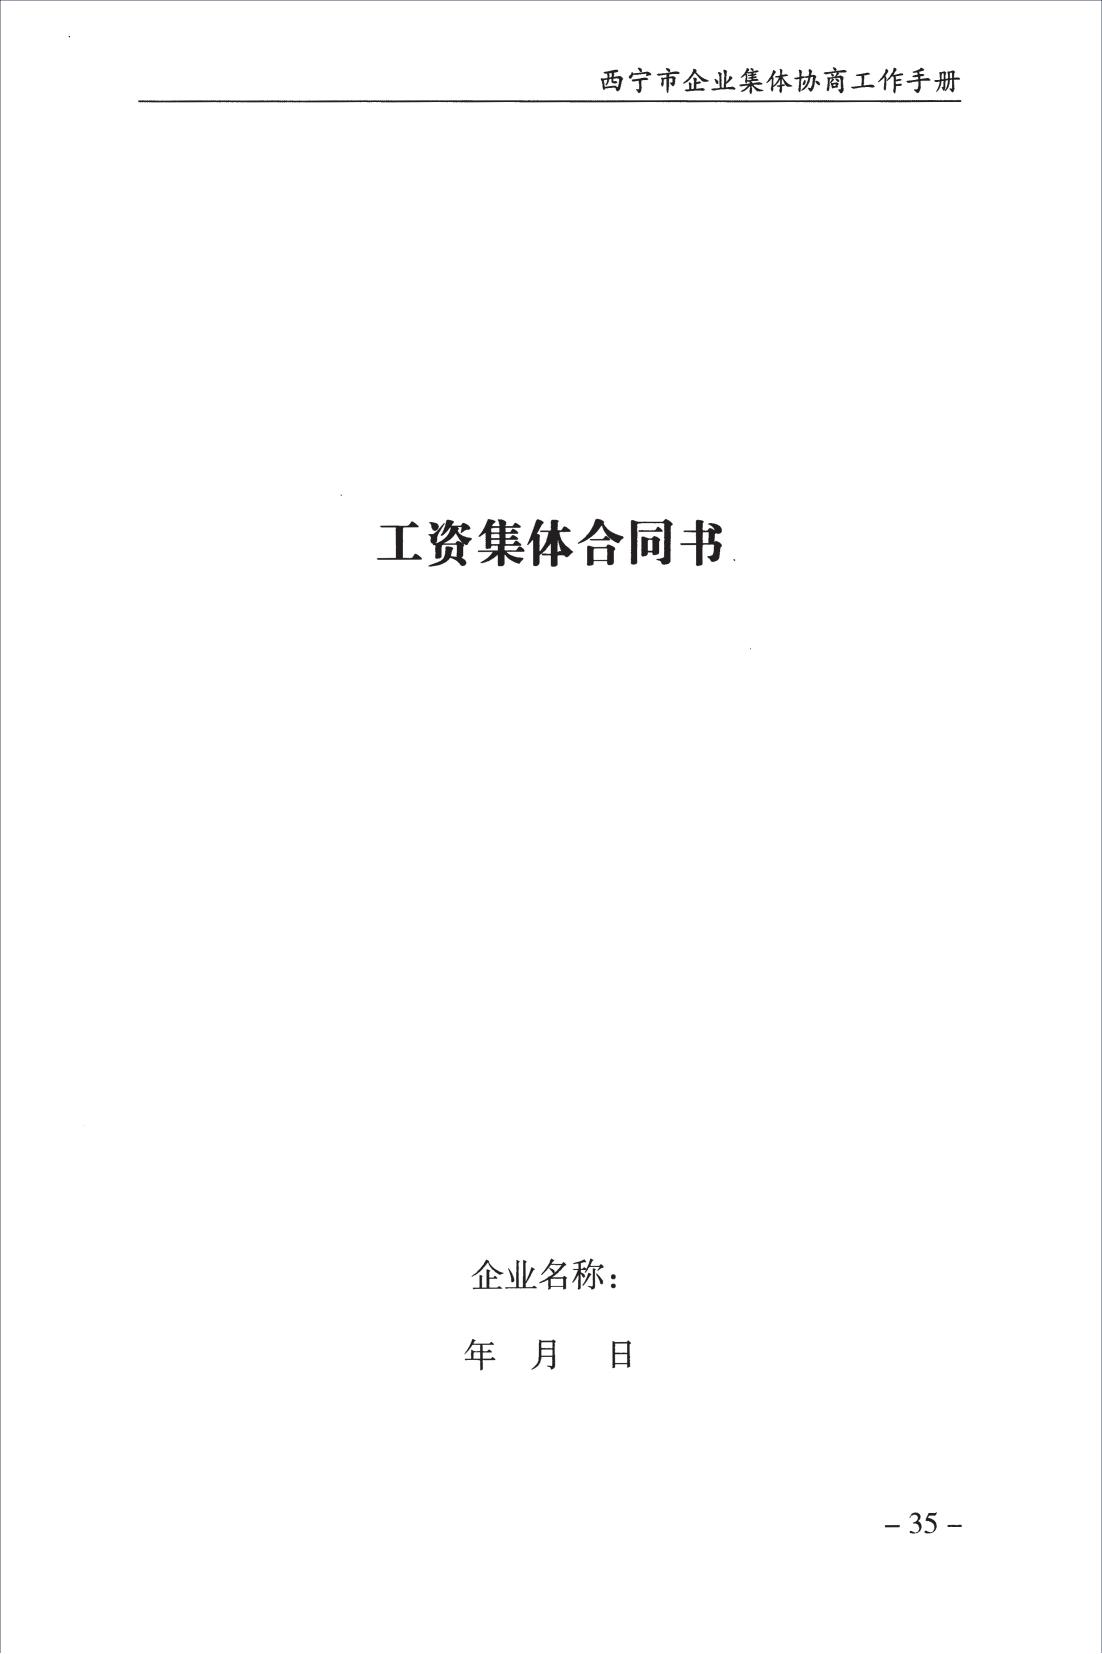 西宁市企业集体协商工作手册_37.jpg